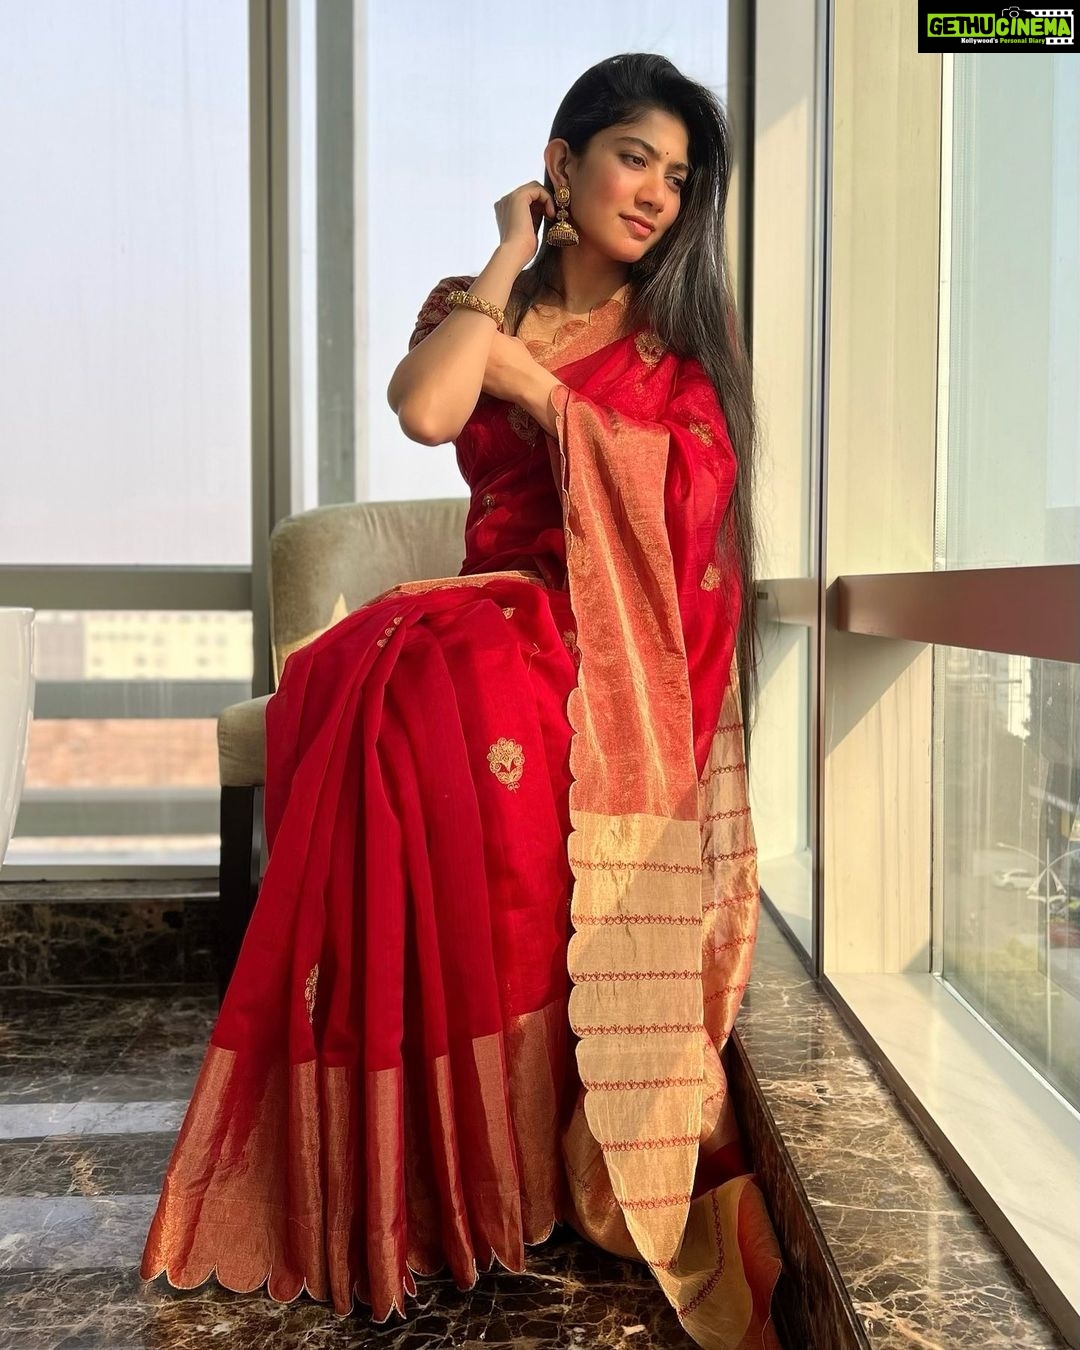 Actress Sai Pallavi HD Photos and Wallpapers January 2022 - Gethu Cinema